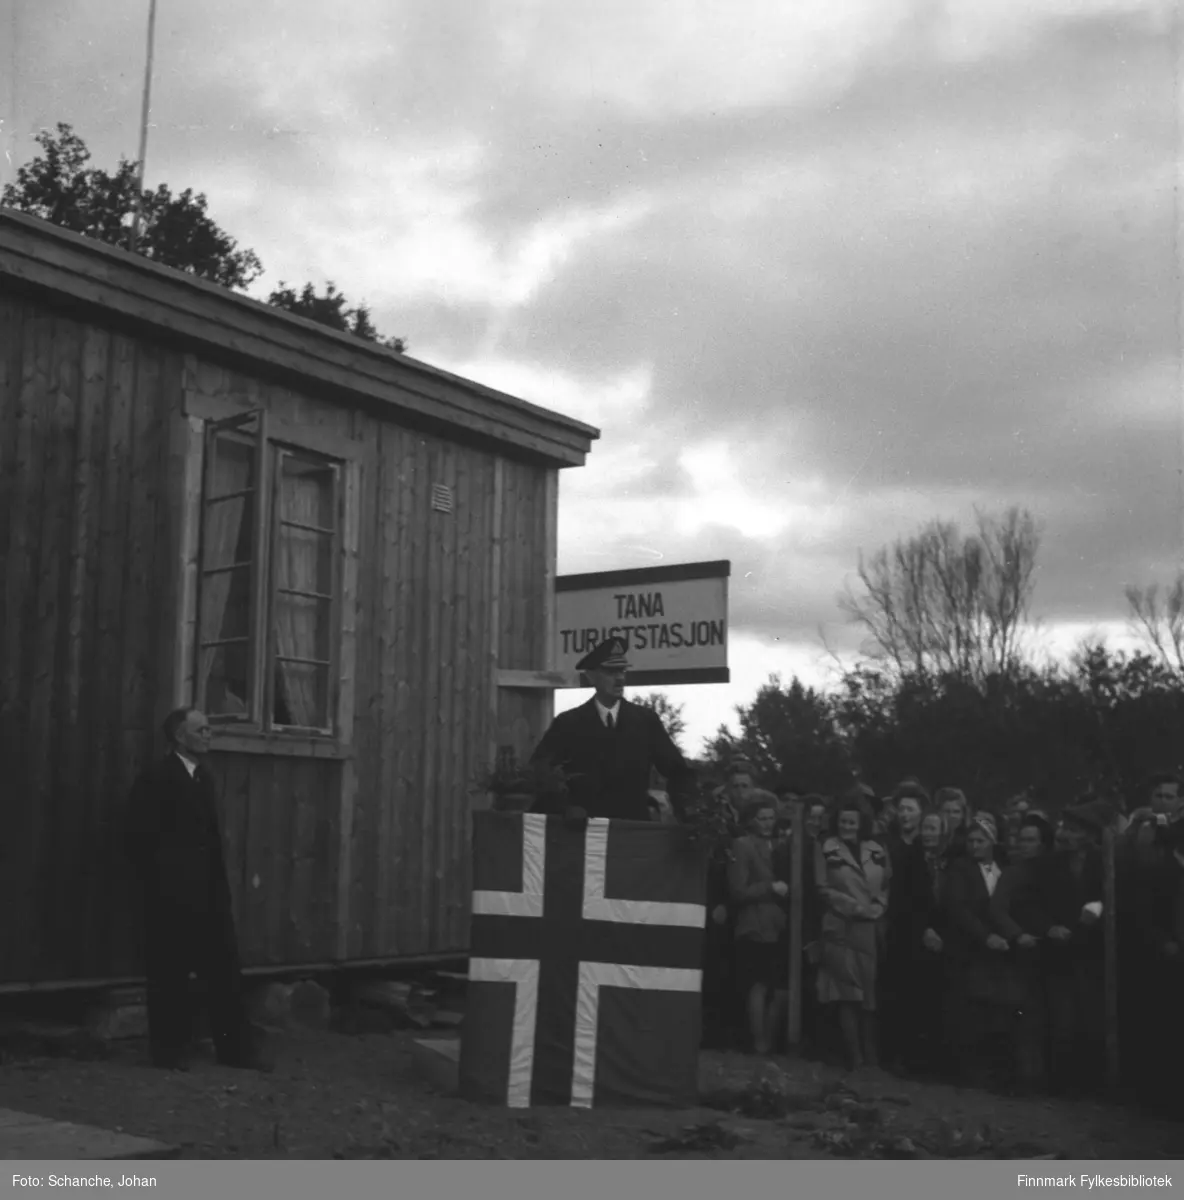 Kongebesøk i 1946:  Kong Haakon VII besøker Tana. Kongen står på talerplattformen ved Tana Turiststasjon og holder tale til folk som har samlet seg bak en gjerde like ved. Talerstolen er dekorert med flagg. Selve turiststasjonen er en nybygdt brakke.